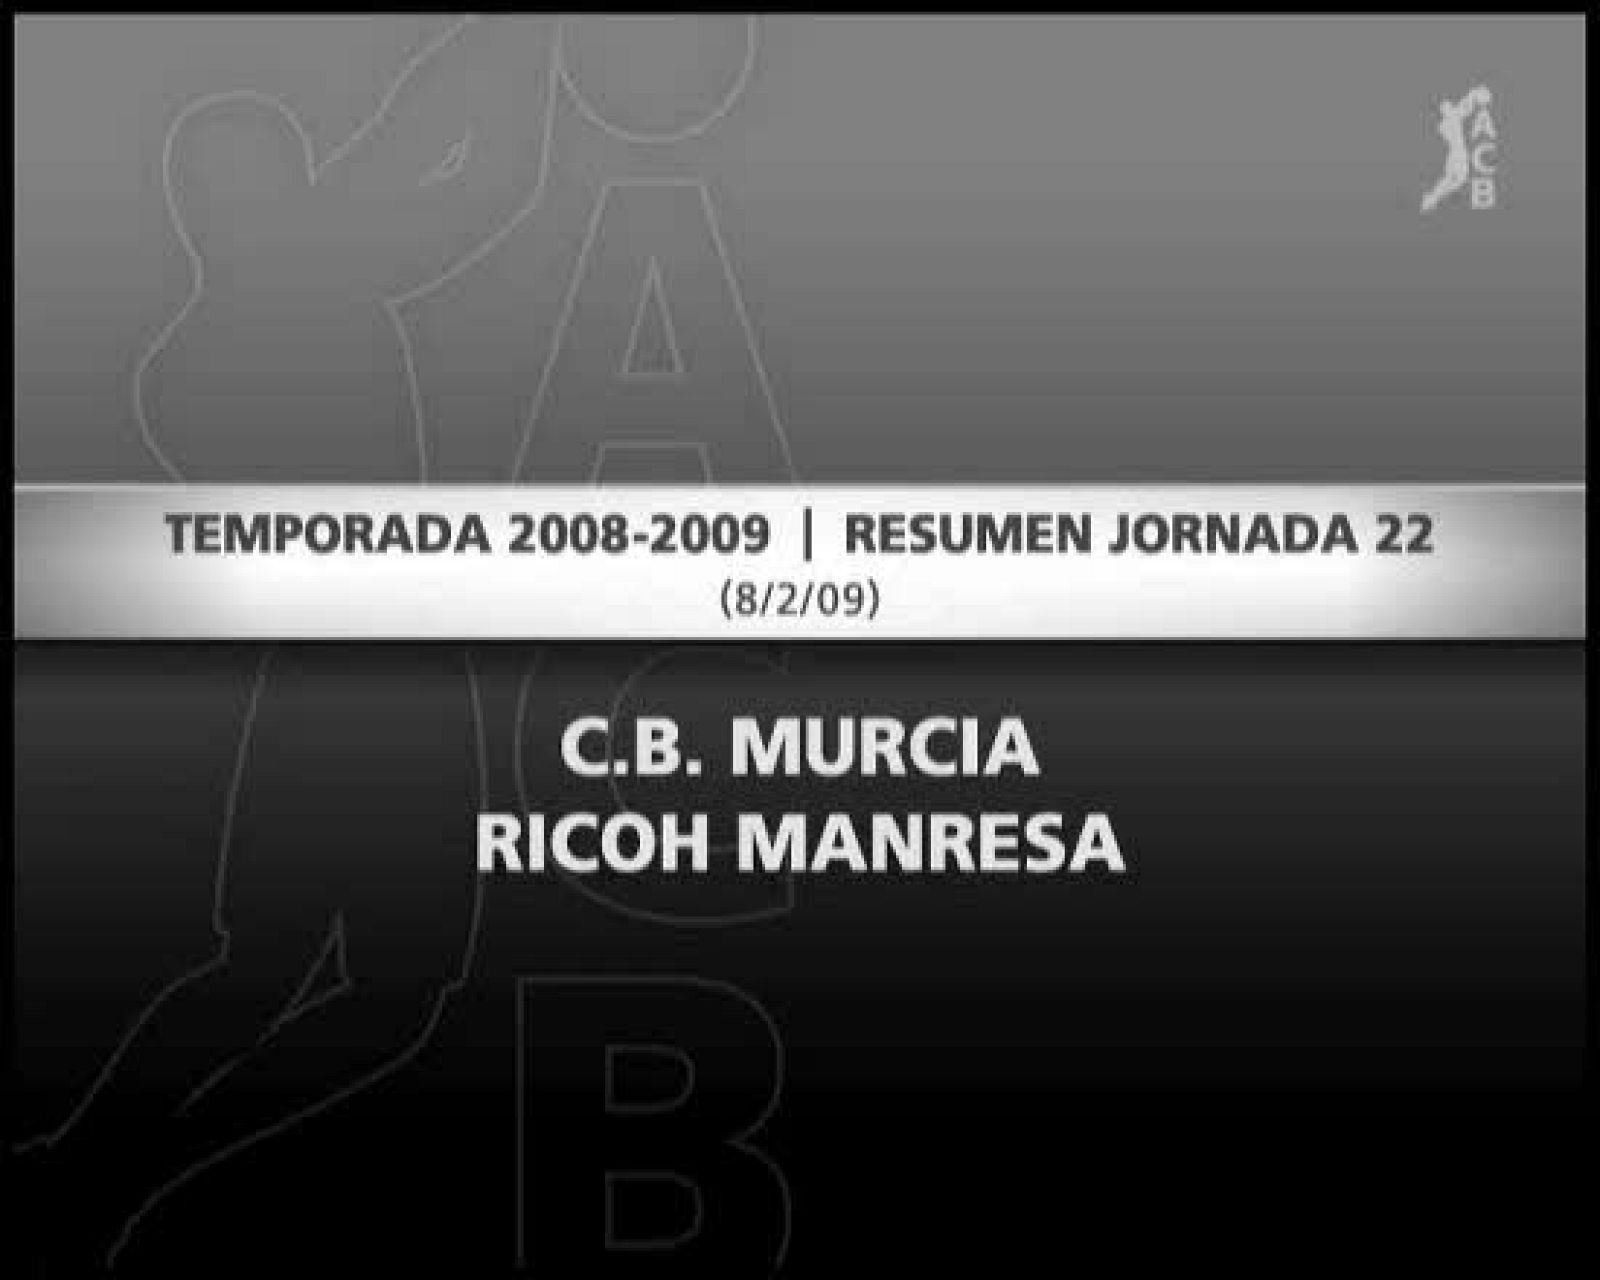 C.B. Murcia 56-65 Ricoh Manresa